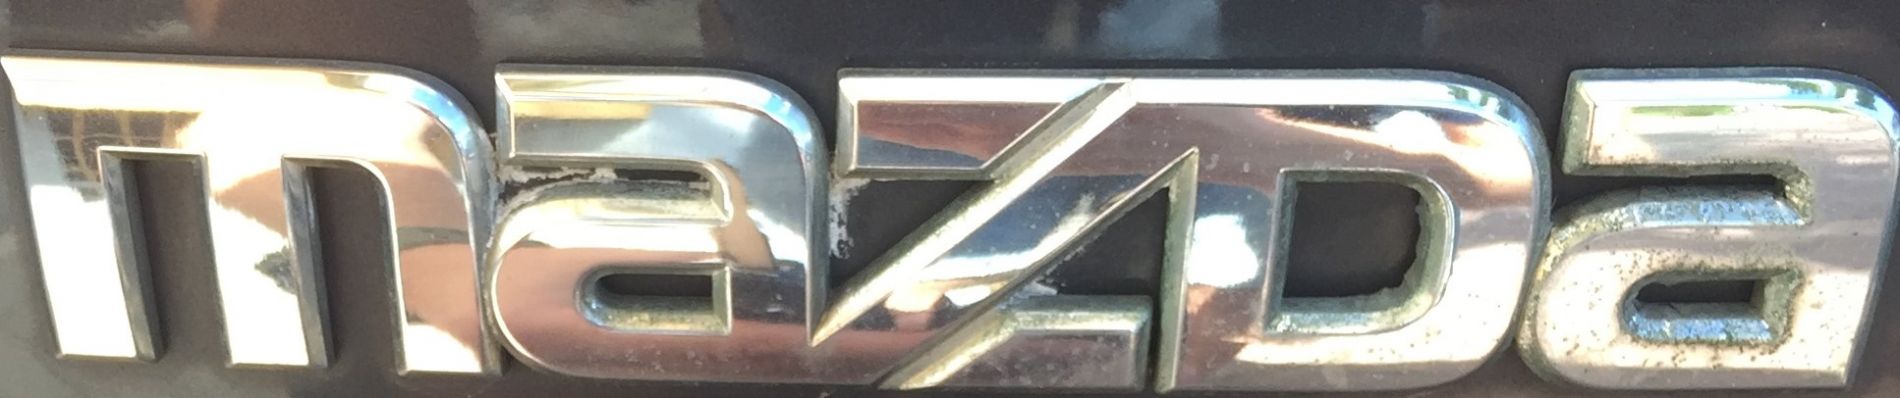 Dorobienie klucza do samochodu Mazda 5 z 2008 roku